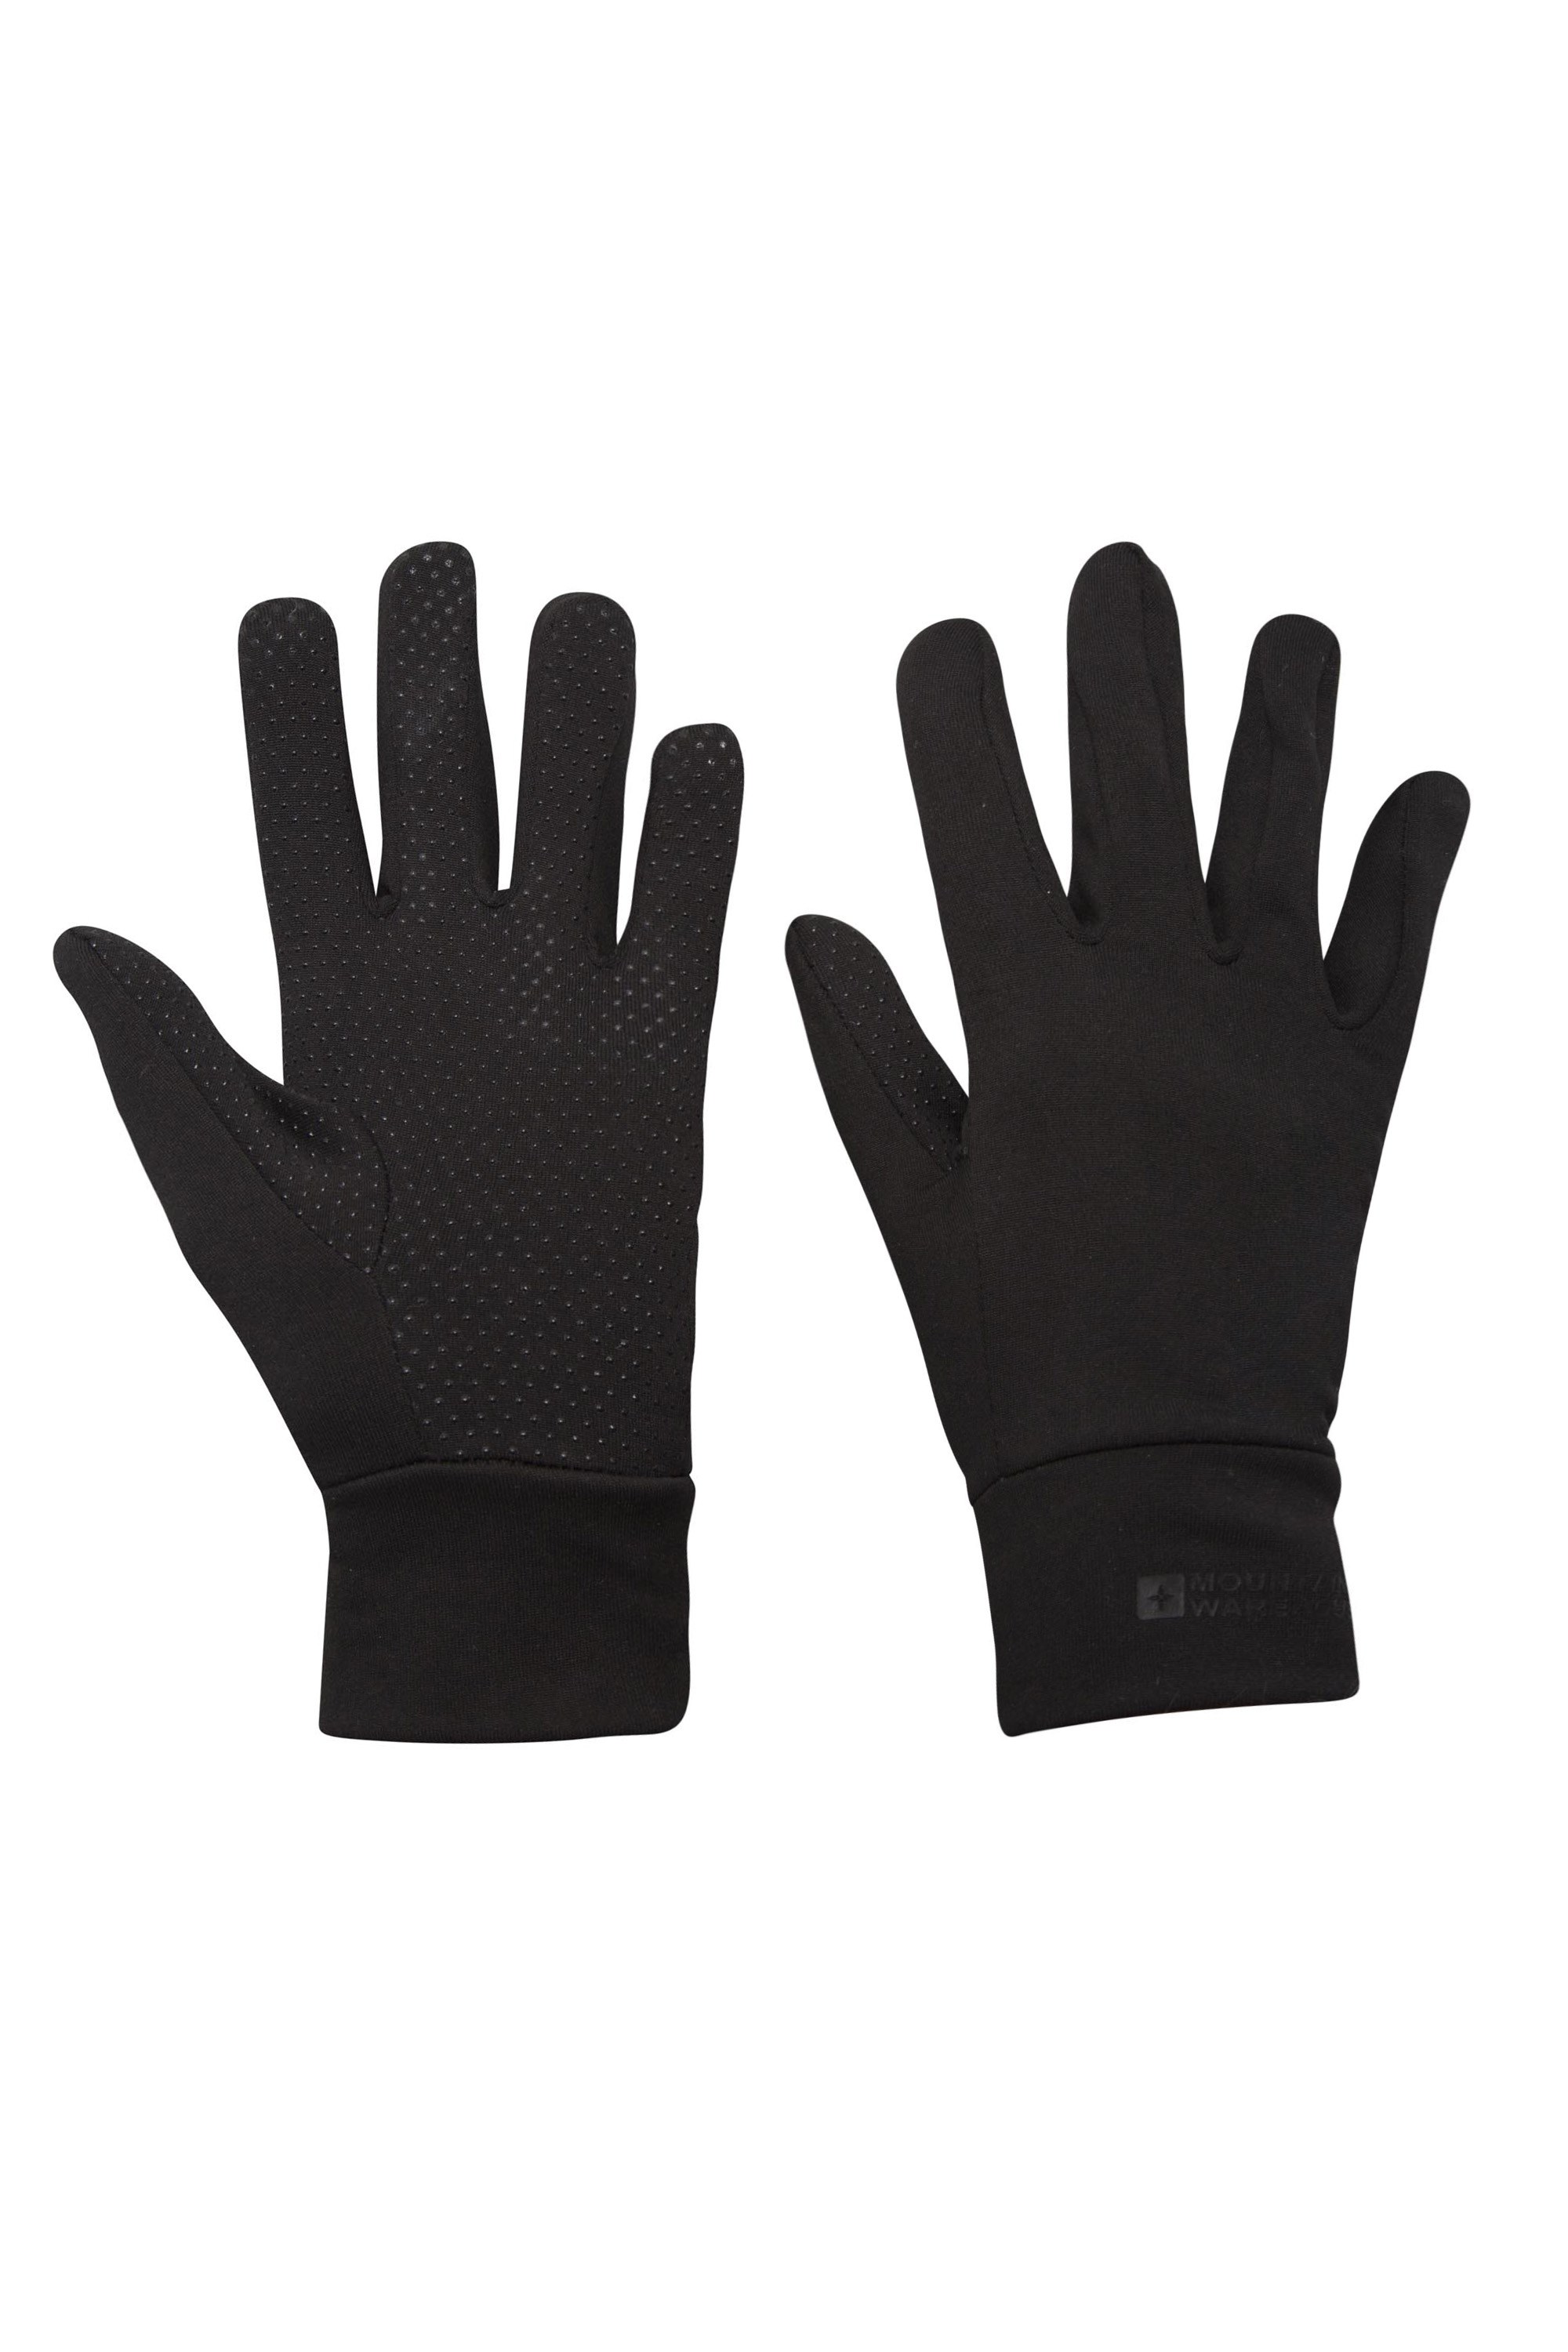 Grippi Lining Gloves - Black